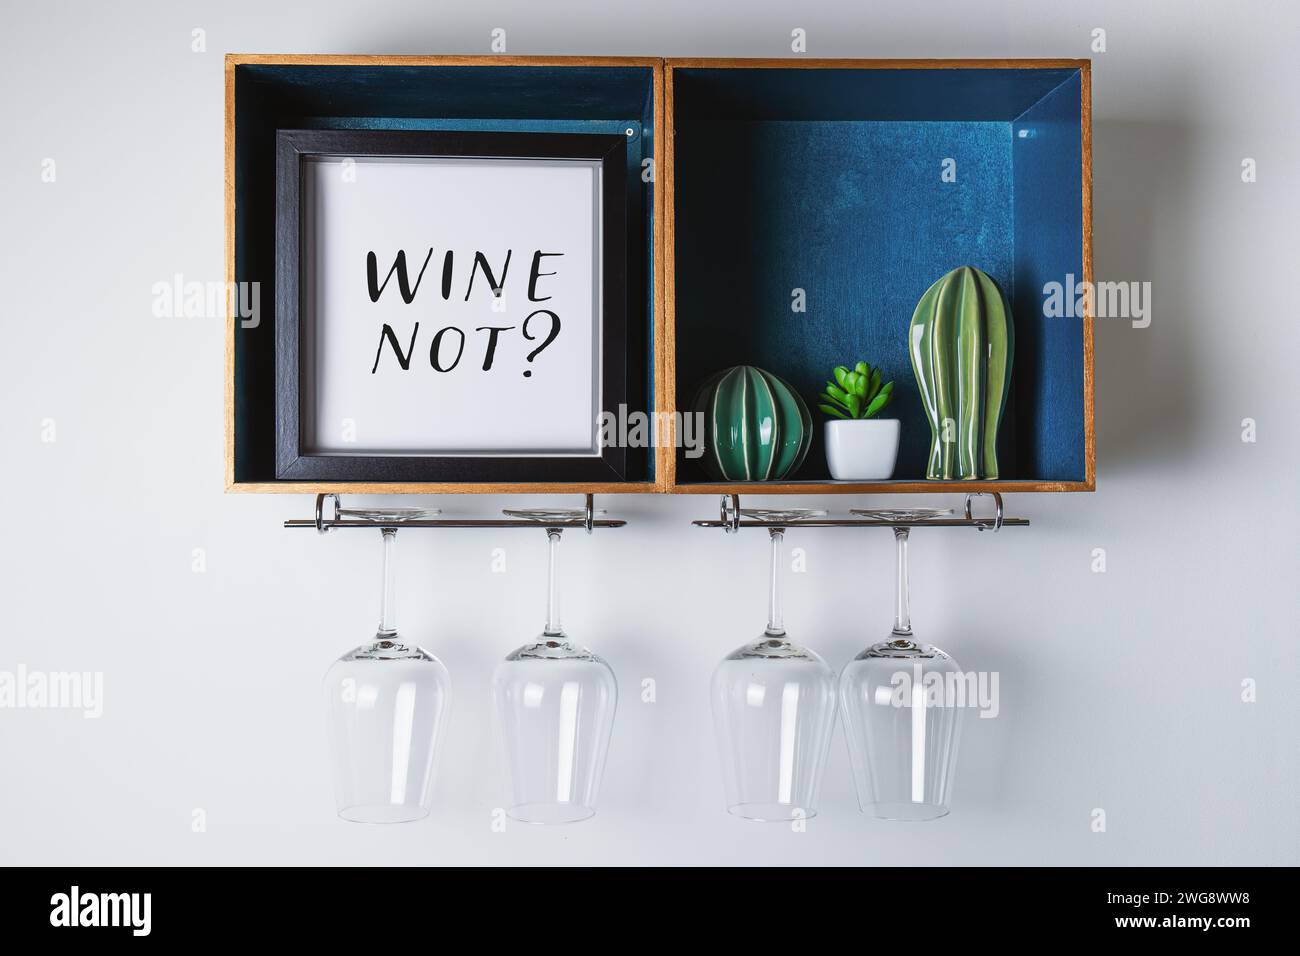 Cadre avec texte humoristique lettrage Wine Not. support de porte-verre à vin avec un signe ludique, plante succulente et design décoratif pour porte-vin Banque D'Images